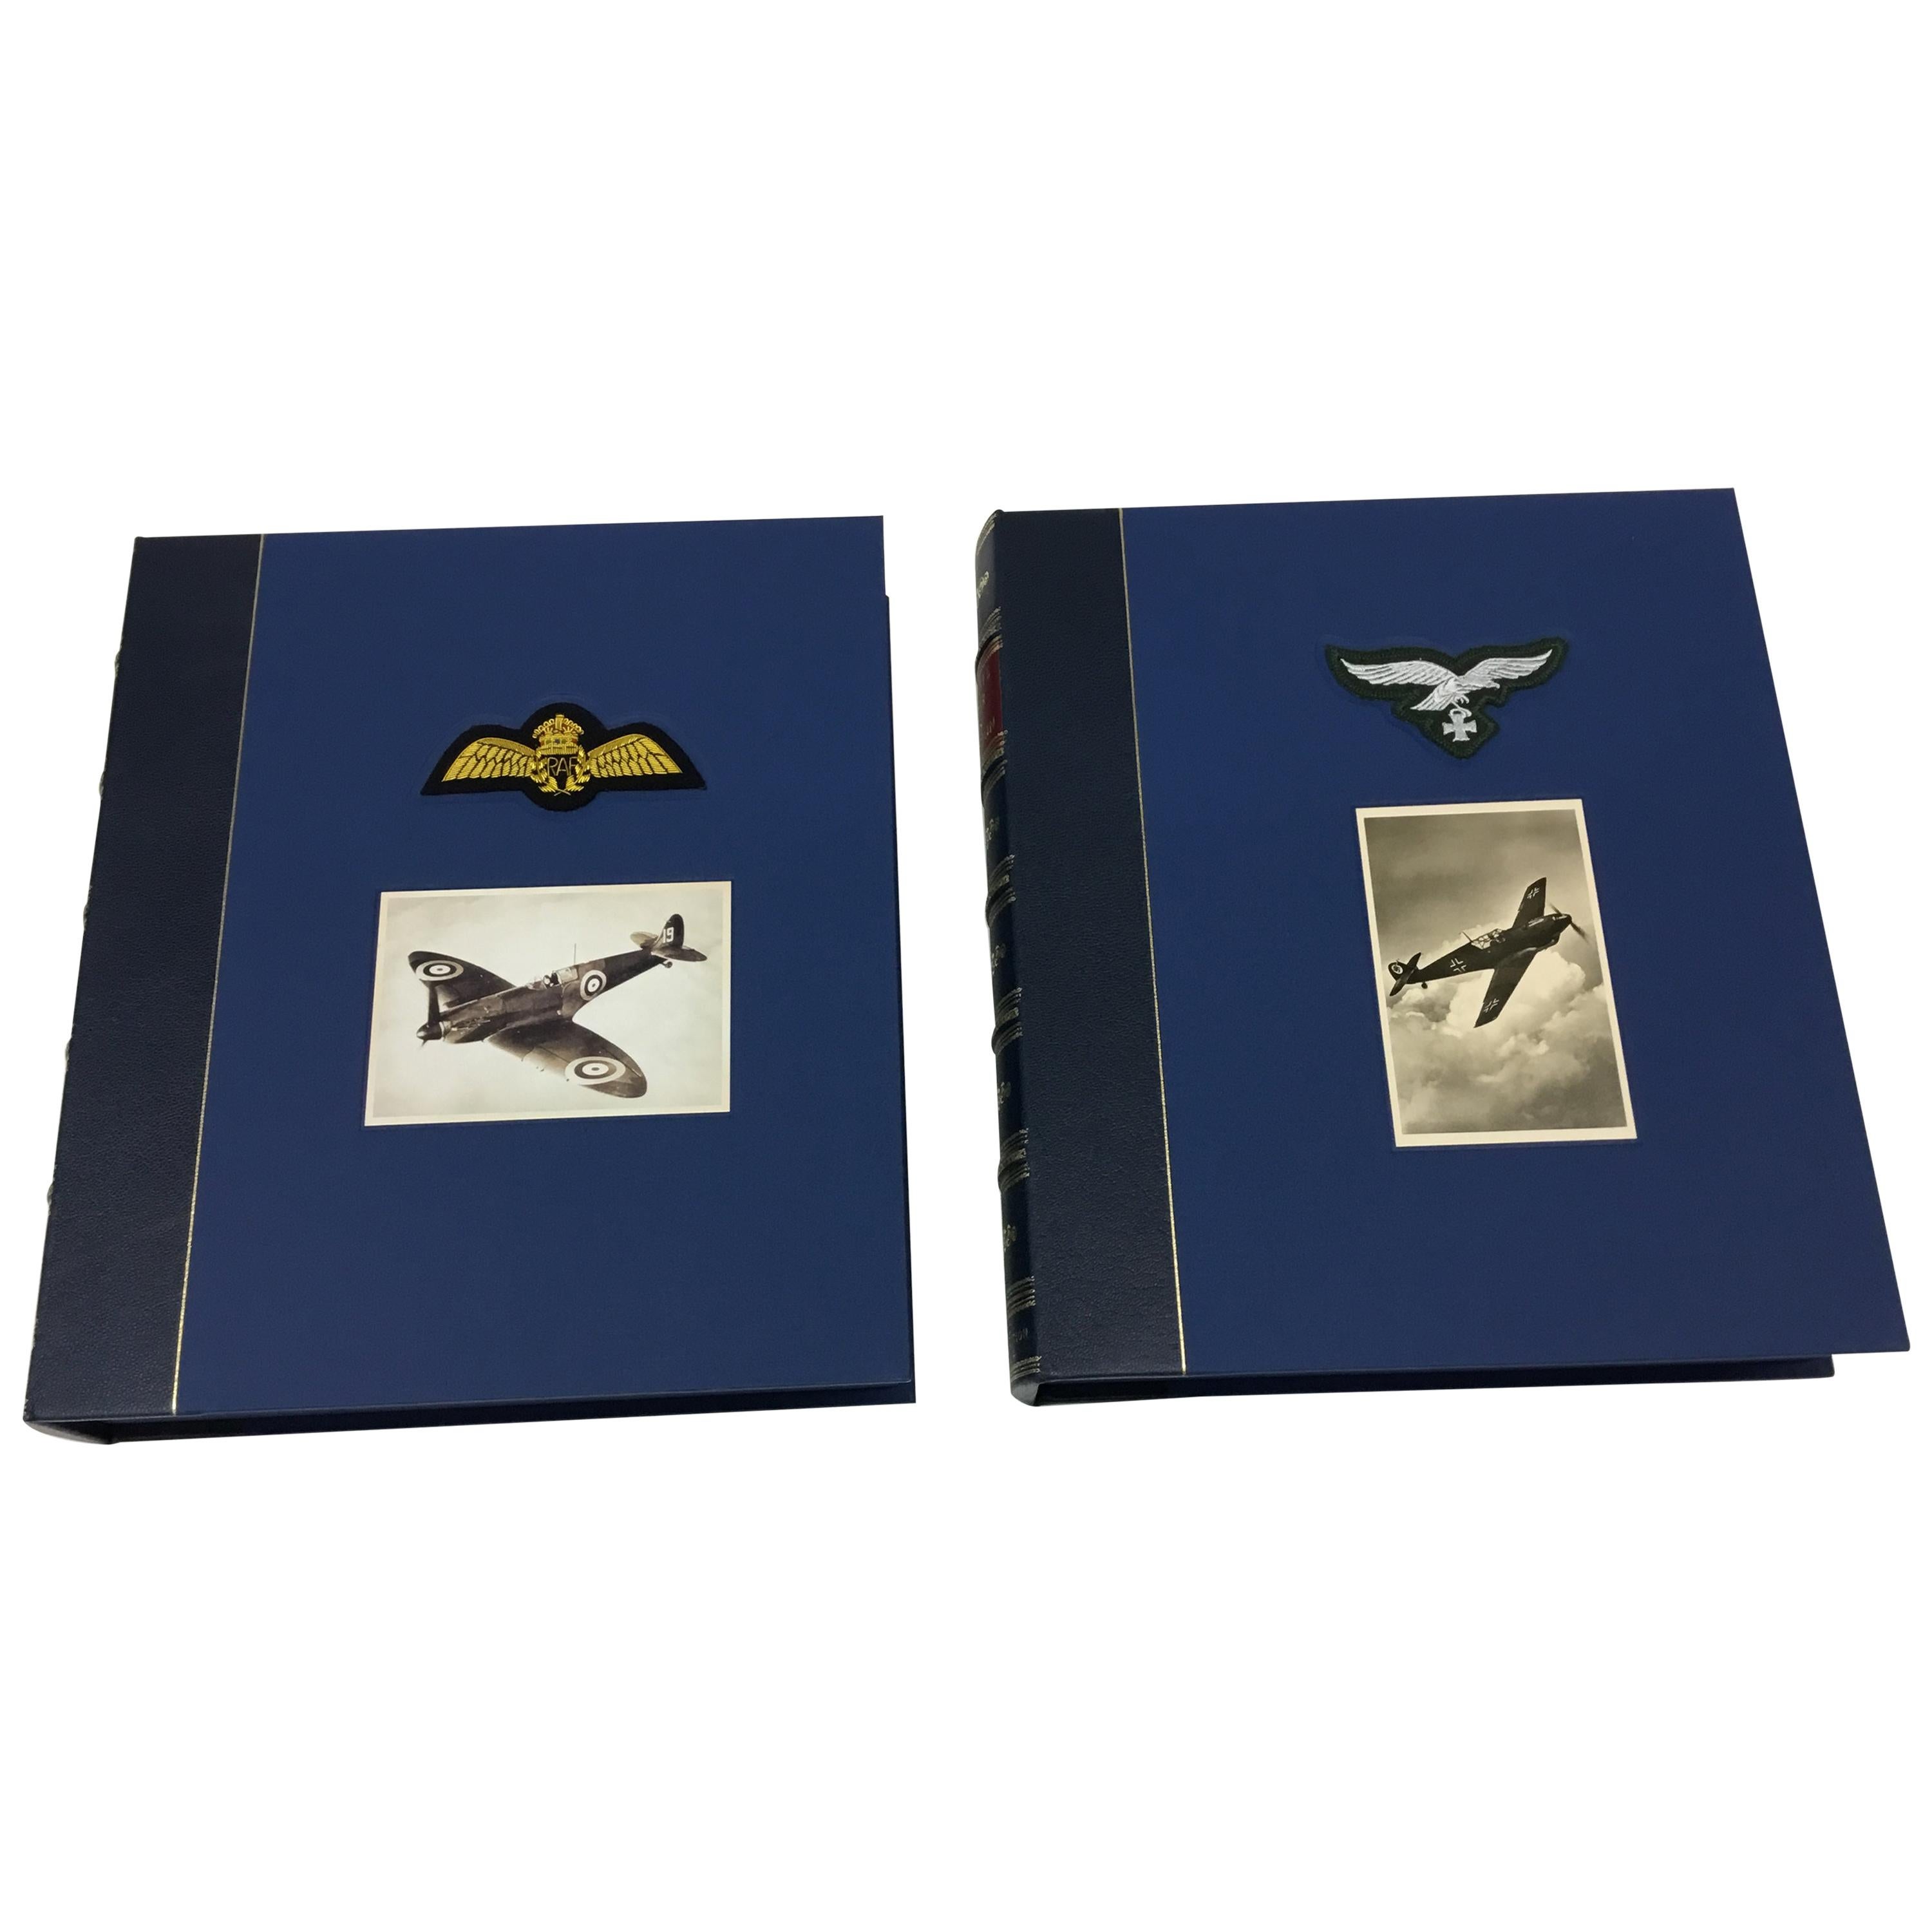 Collection Battle of Britain Fighter Aces, édition limitée signée, deux volumes